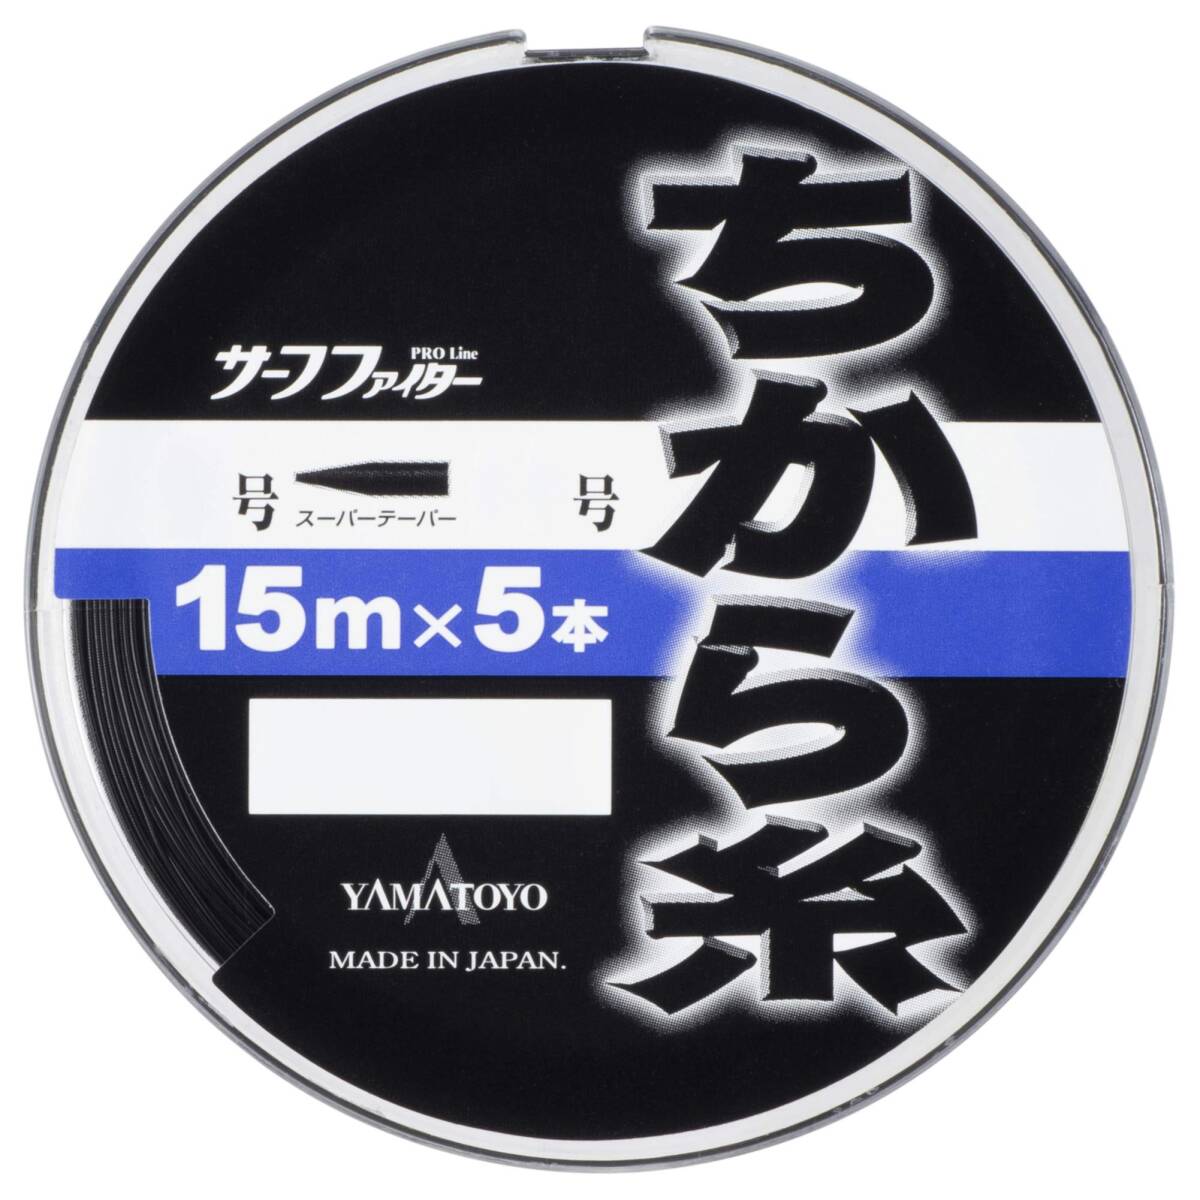 ヤマトヨテグス(YAMATOYO) ナイロンライン サーフファイター ちから糸 15m×5 3-16号 ブラック_画像2